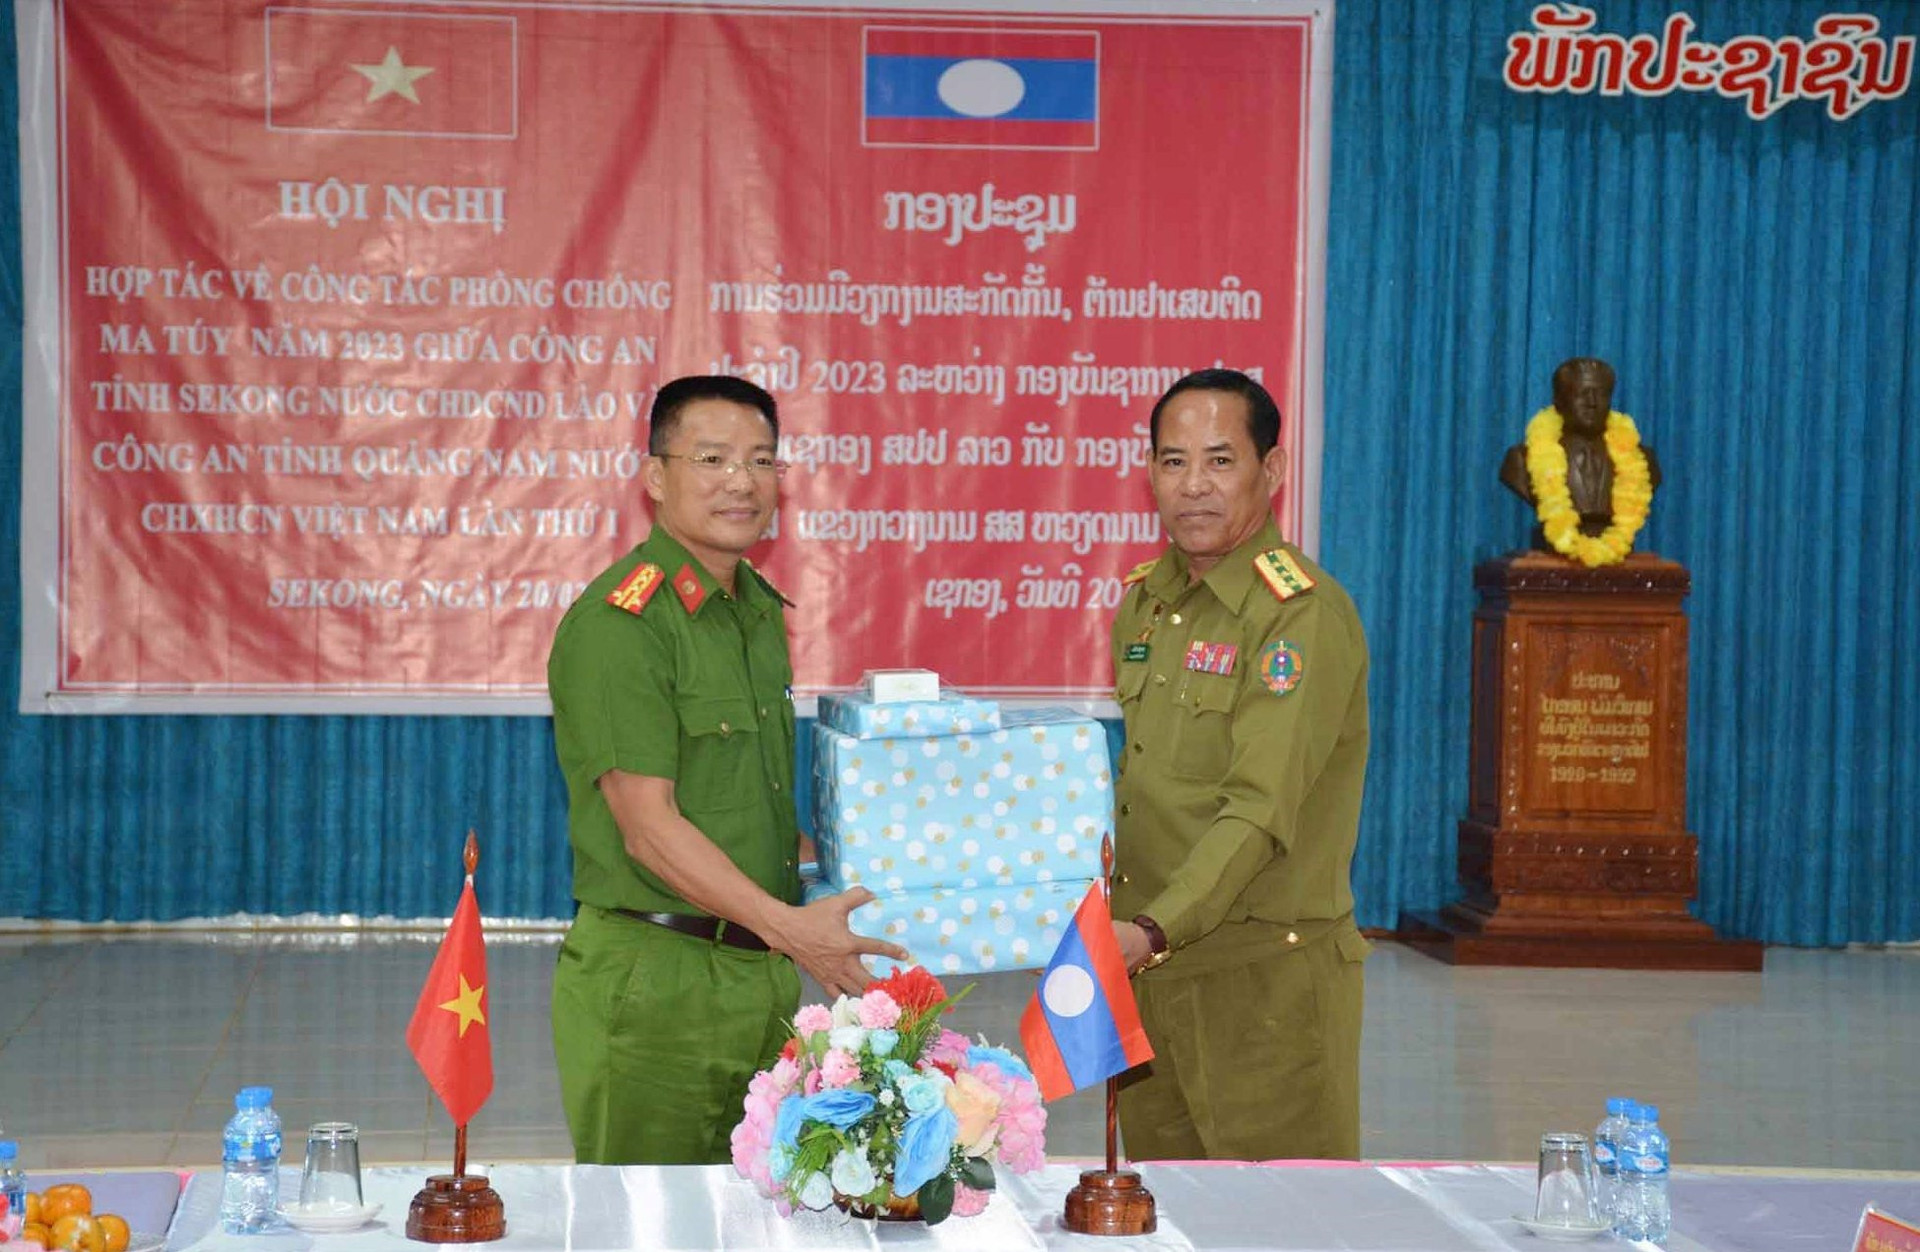 Đại tá Nguyễn Hà Lai, Phó Giám đốc Công an tỉnh Quảng Nam tặng quà cho Công an tỉnh Sê Kông (Lào). Ảnh: M.T